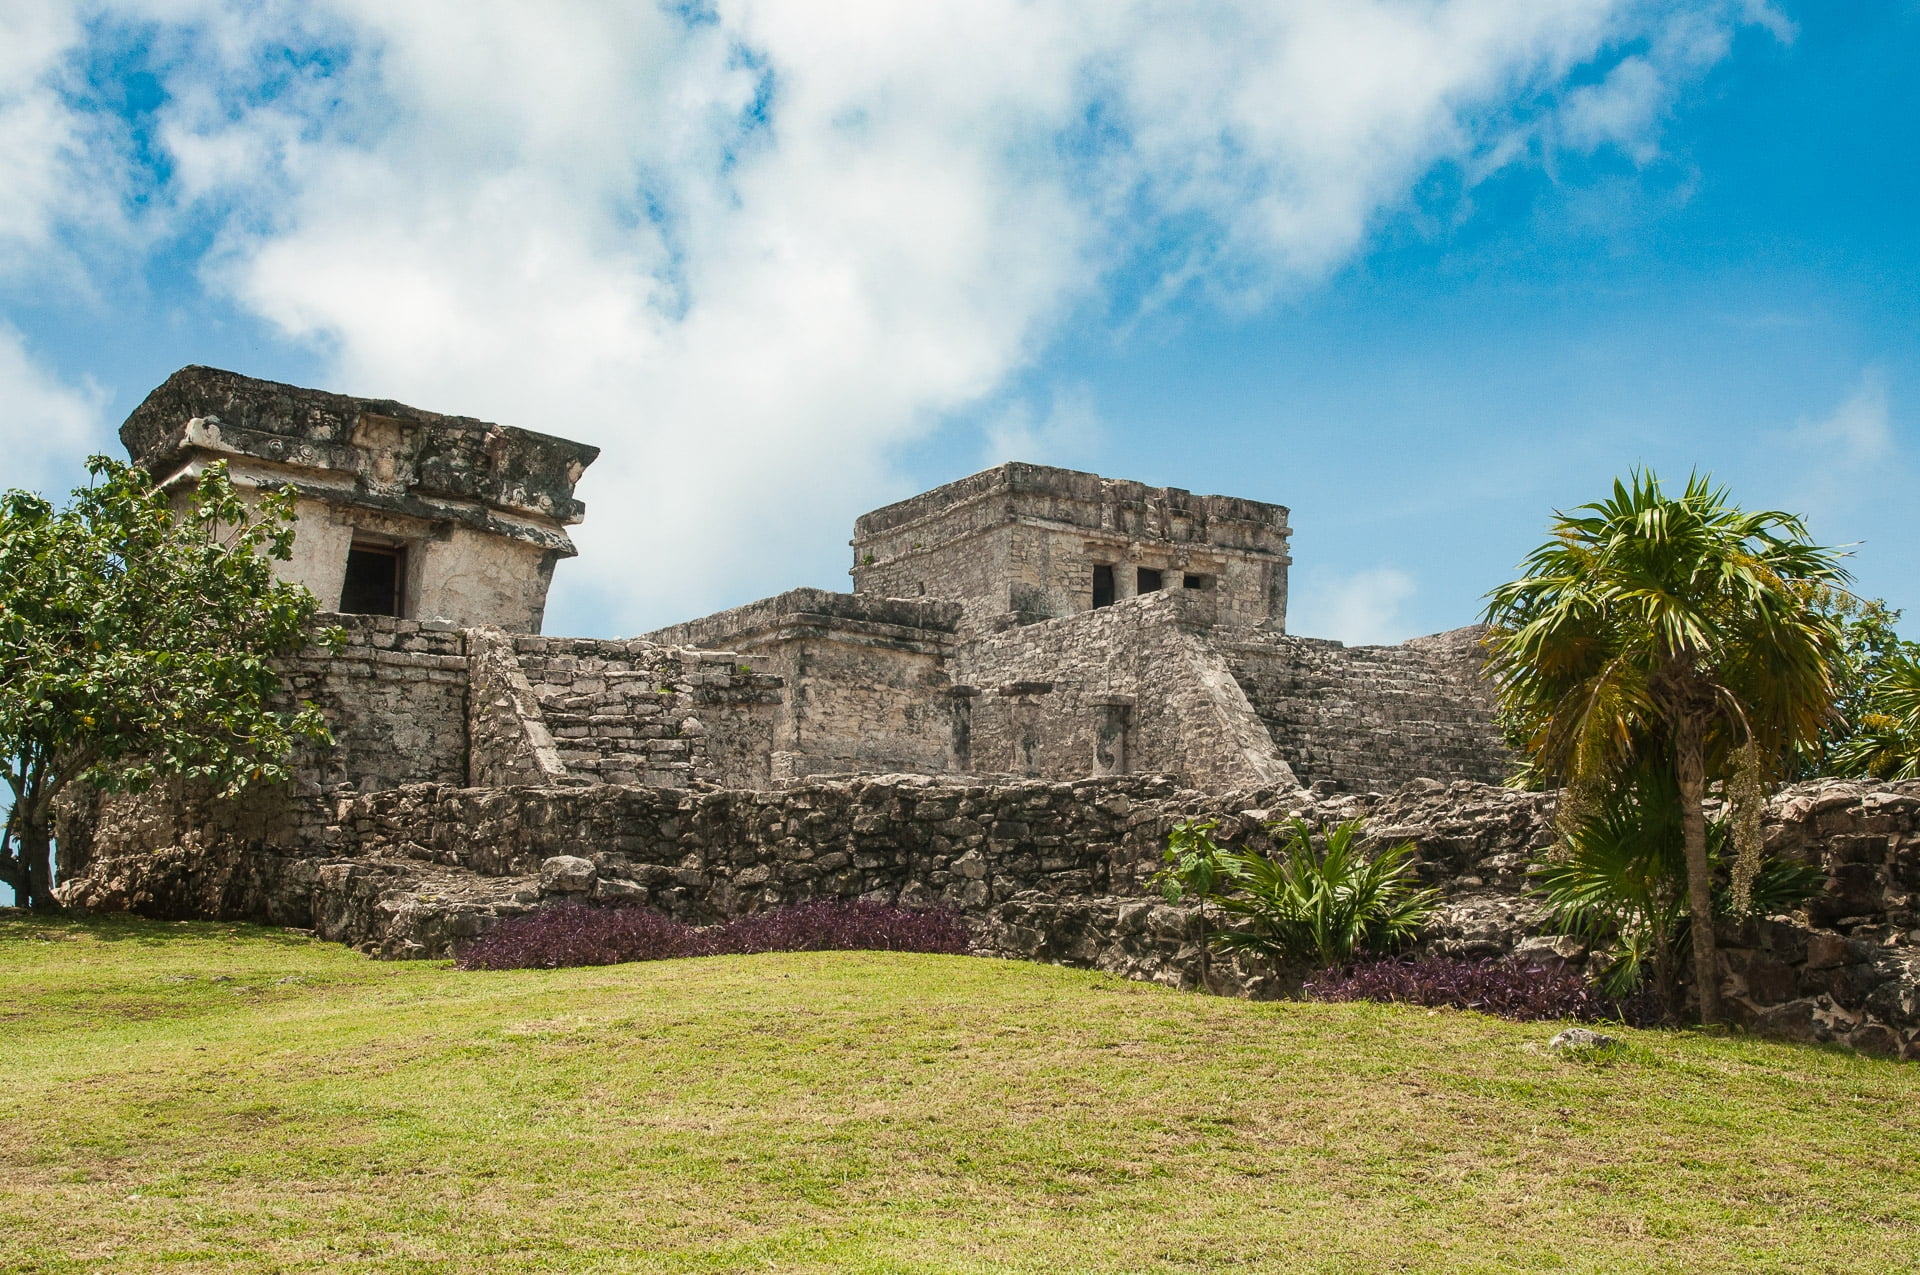 el castillo, ruines de Tulum au Mexique